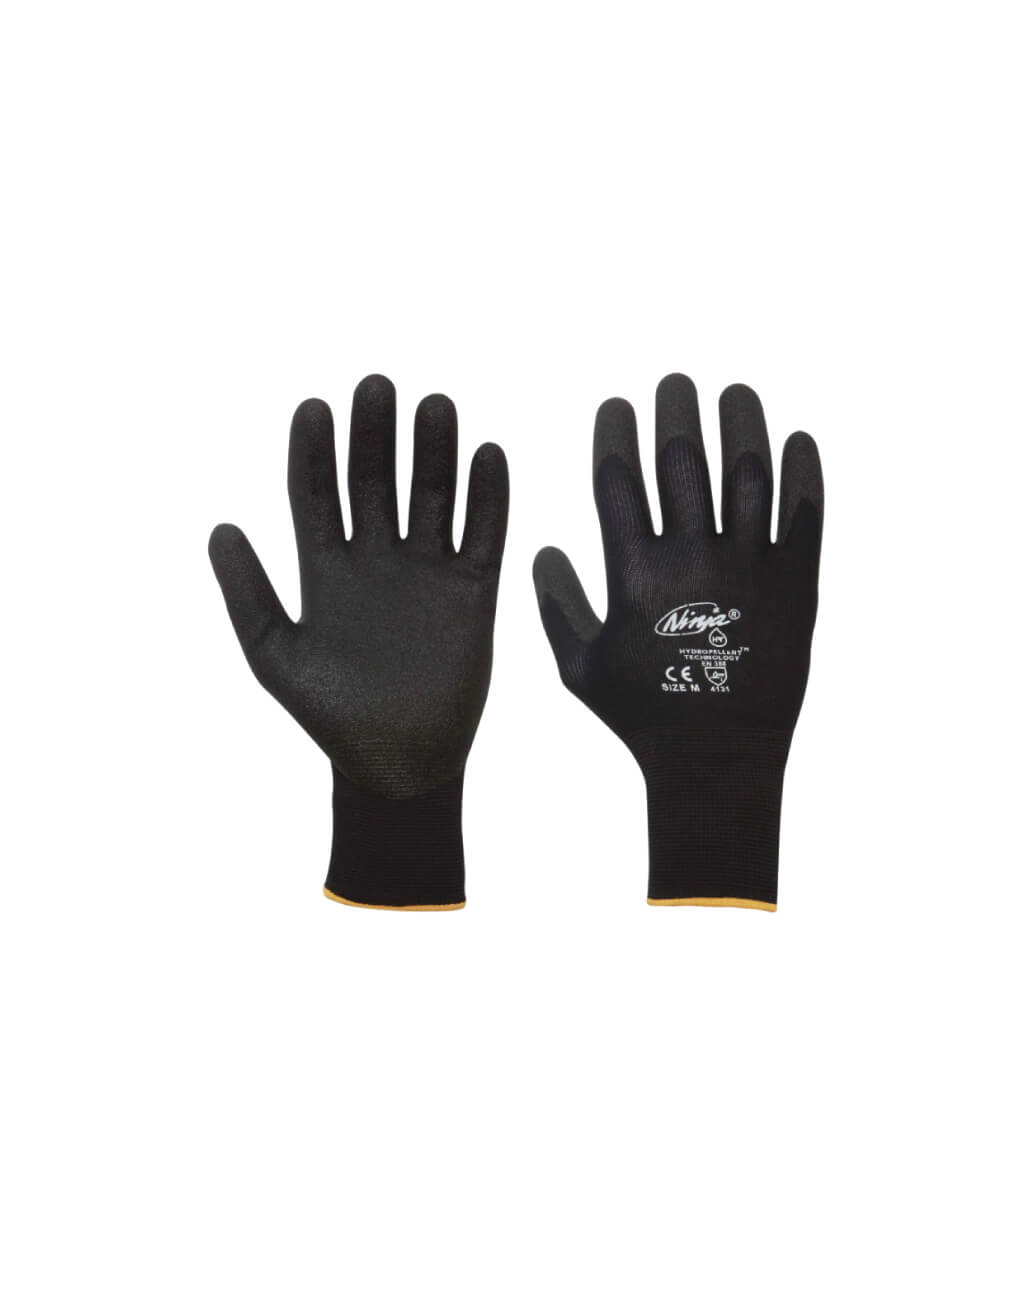 Buy Insulation Work Gloves